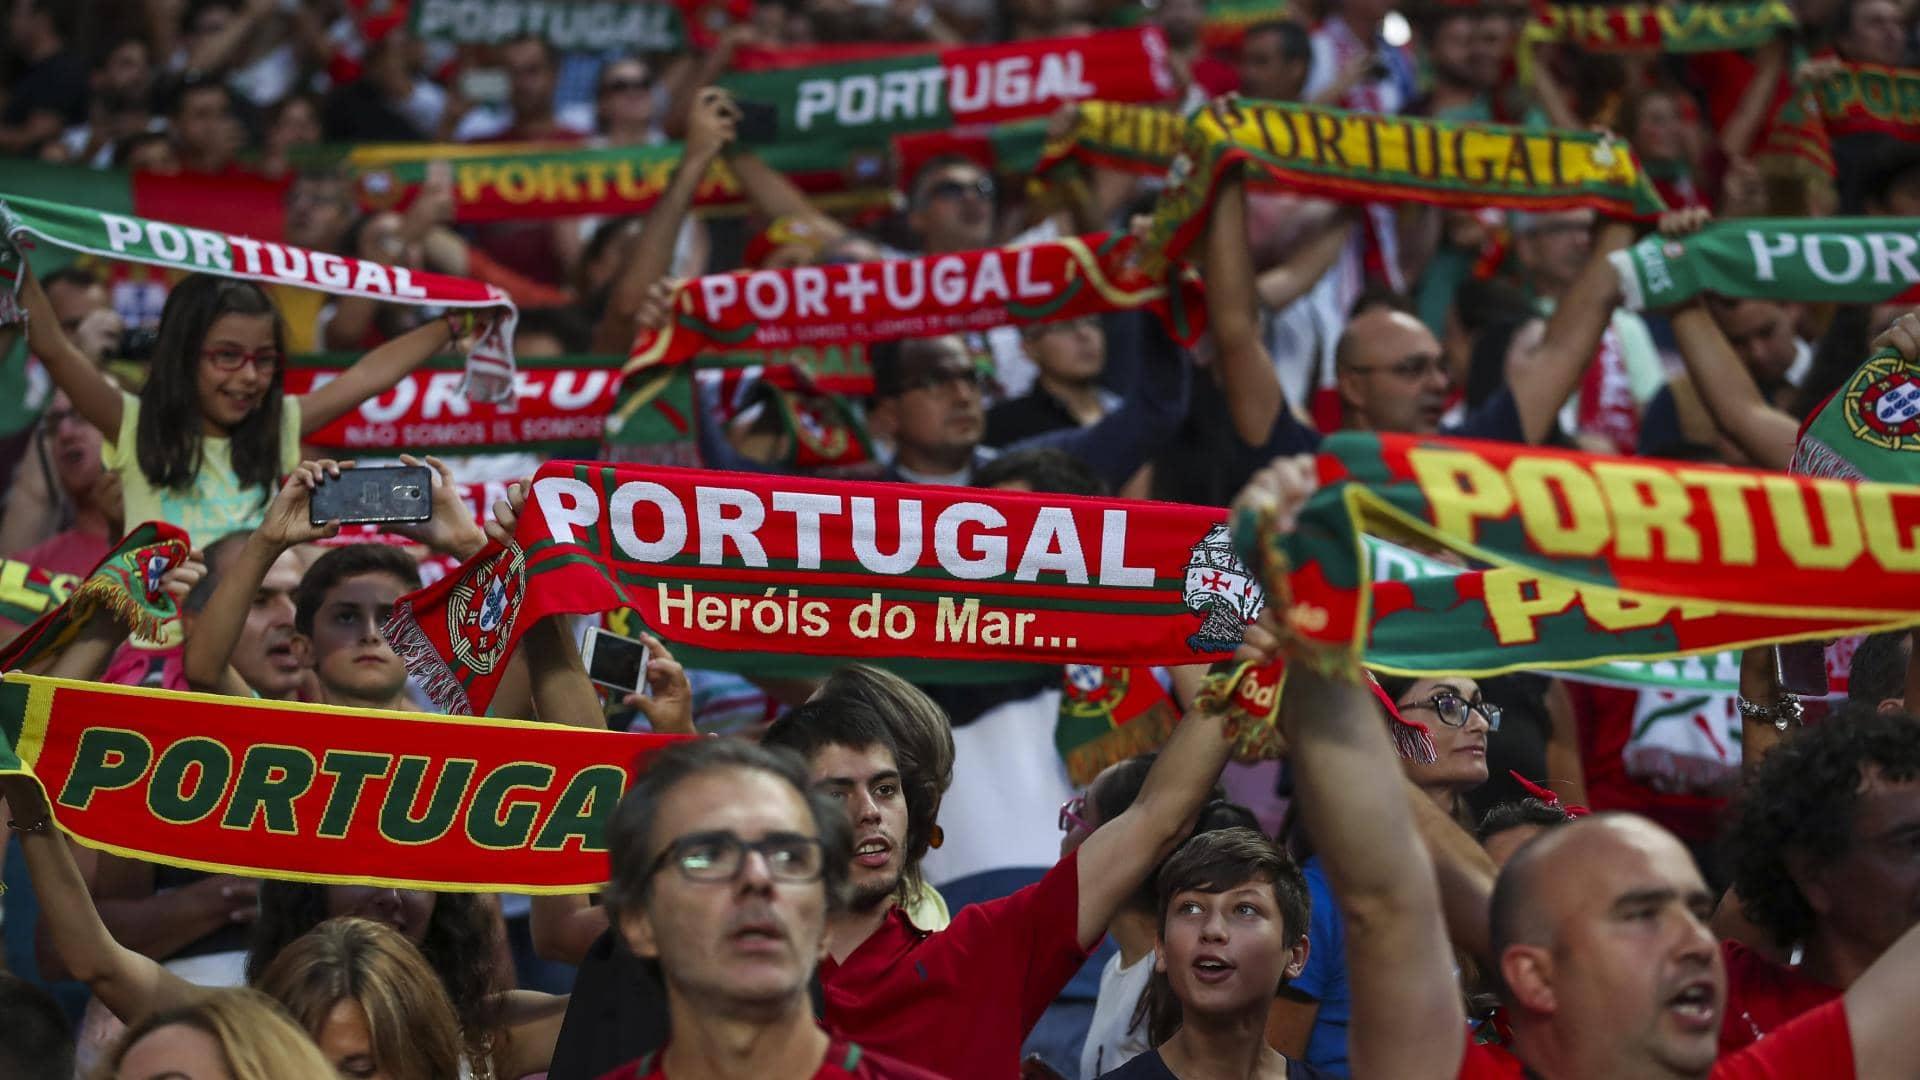 Futebol é o esporte preferido dos apostadores portugueses